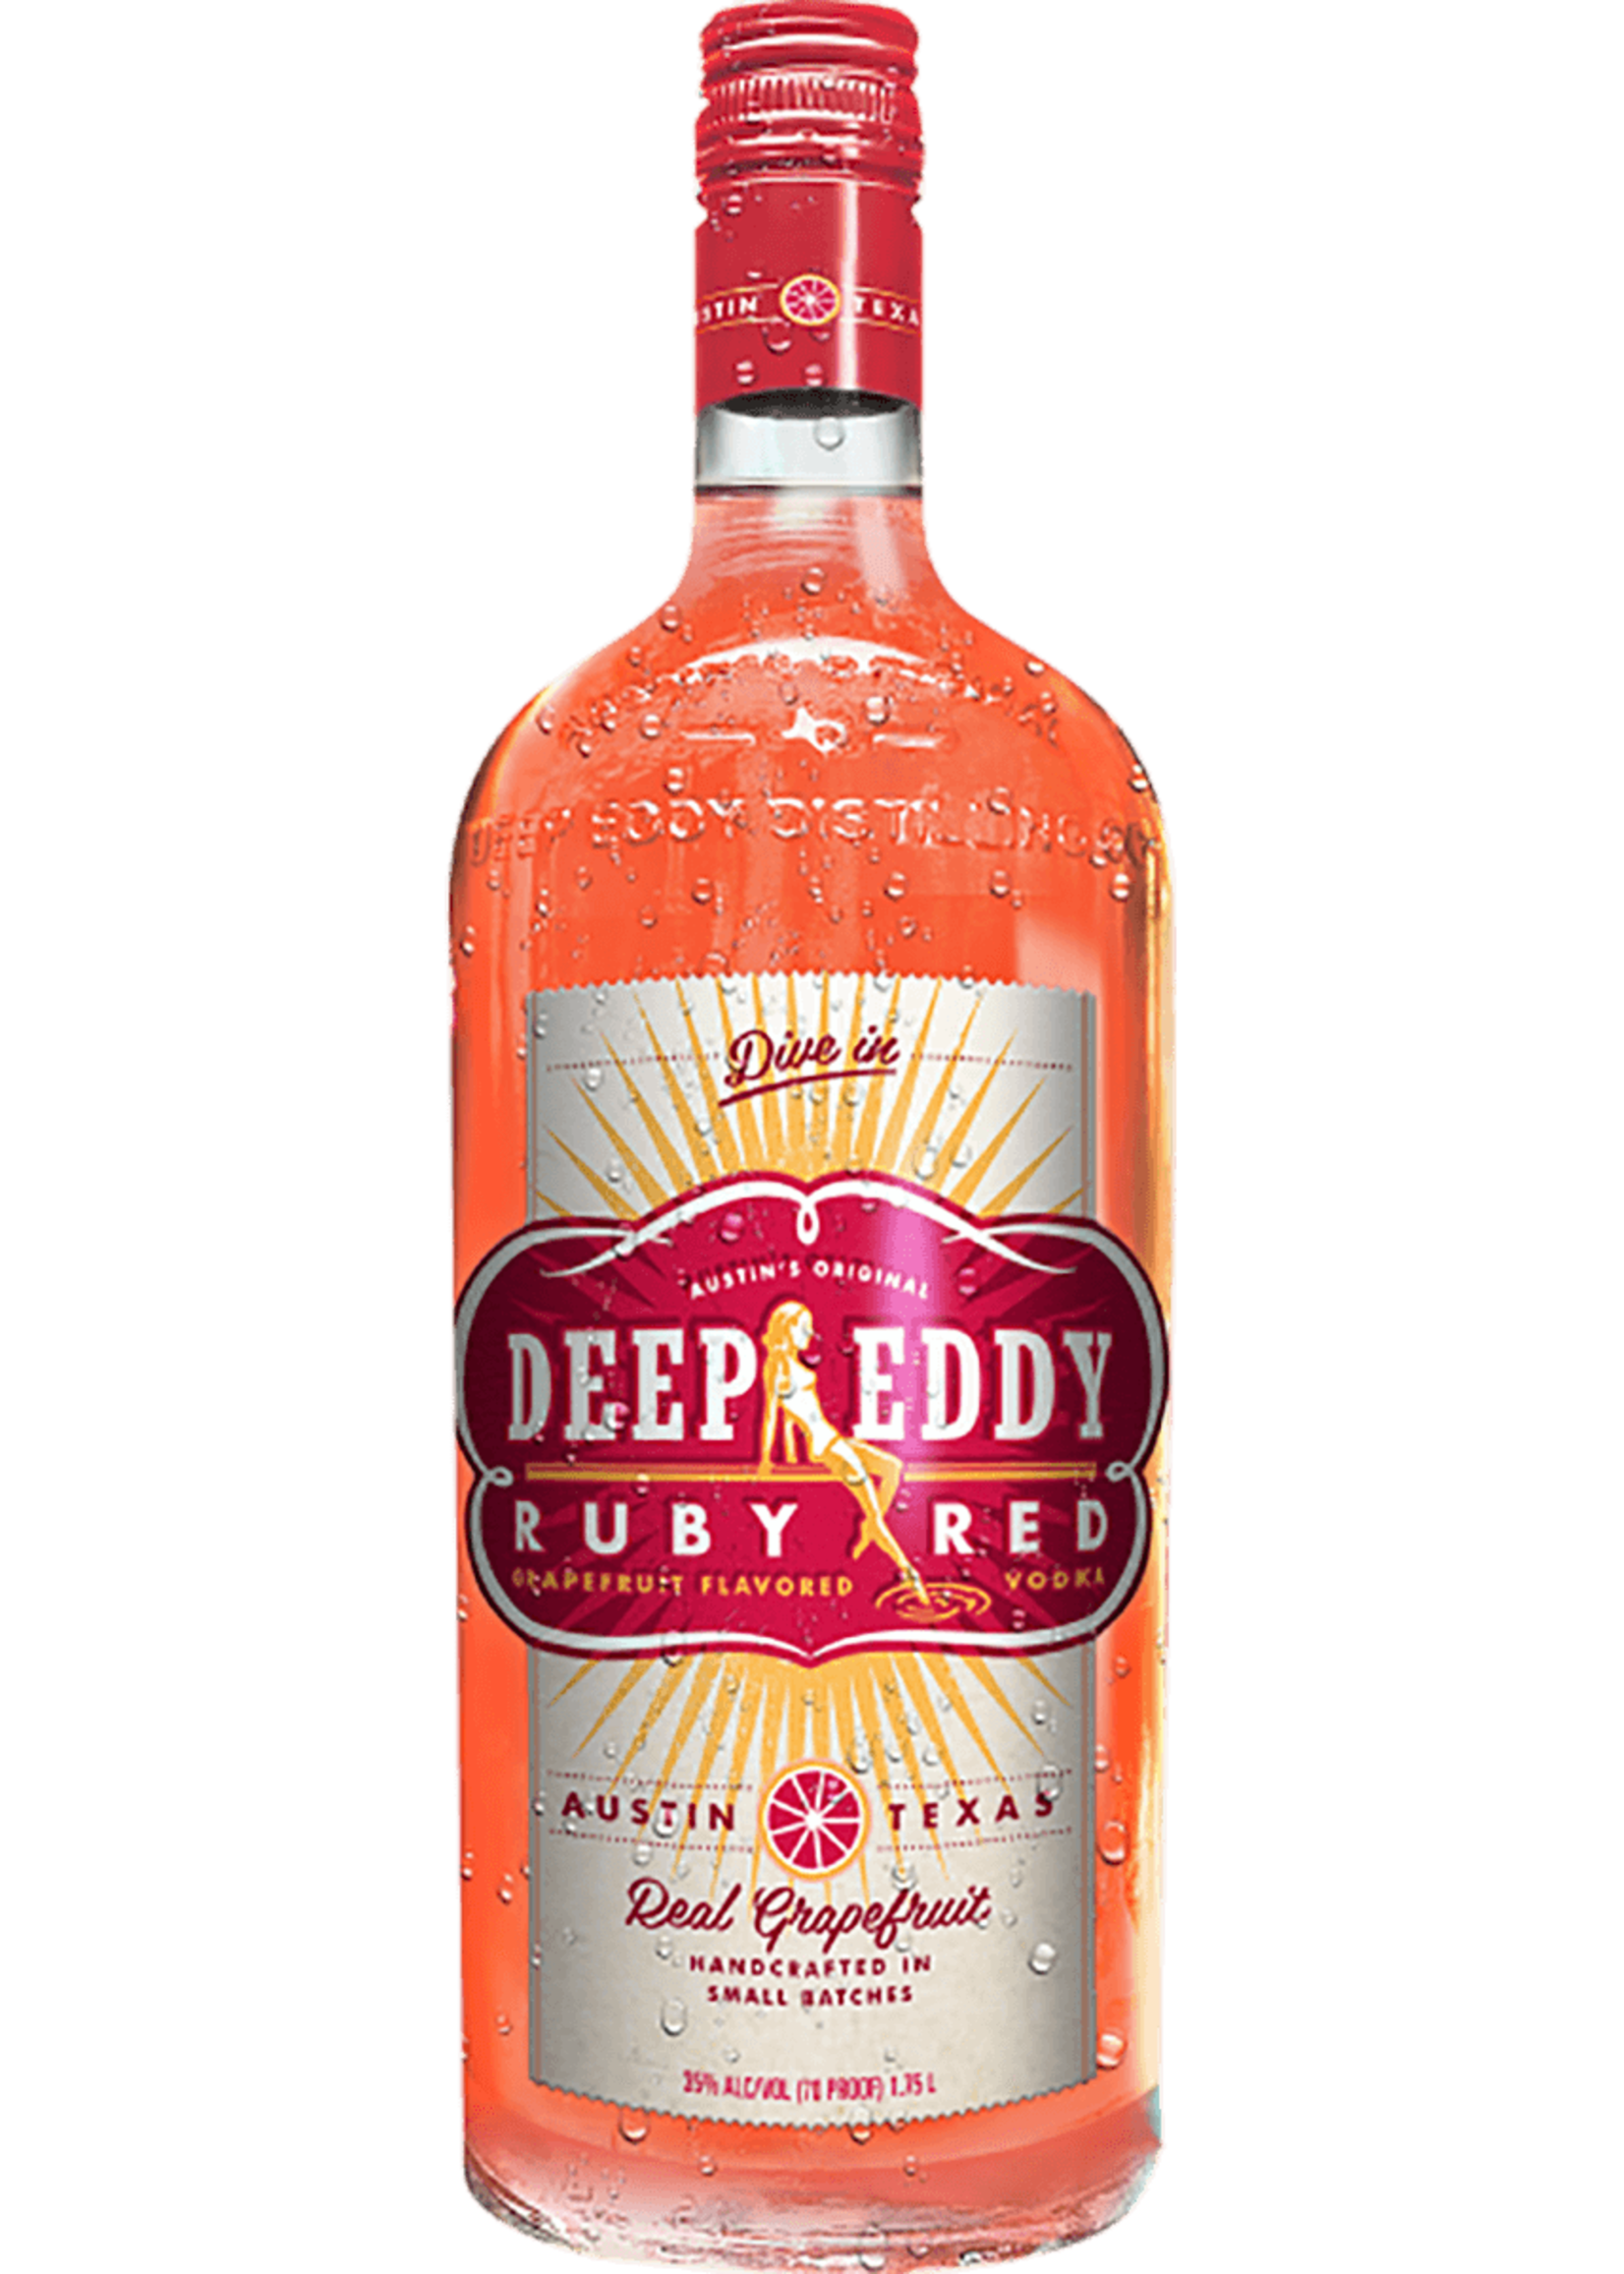 DEEP EDDY DEEP EDDY	RUBY RED VODKA	1.75L